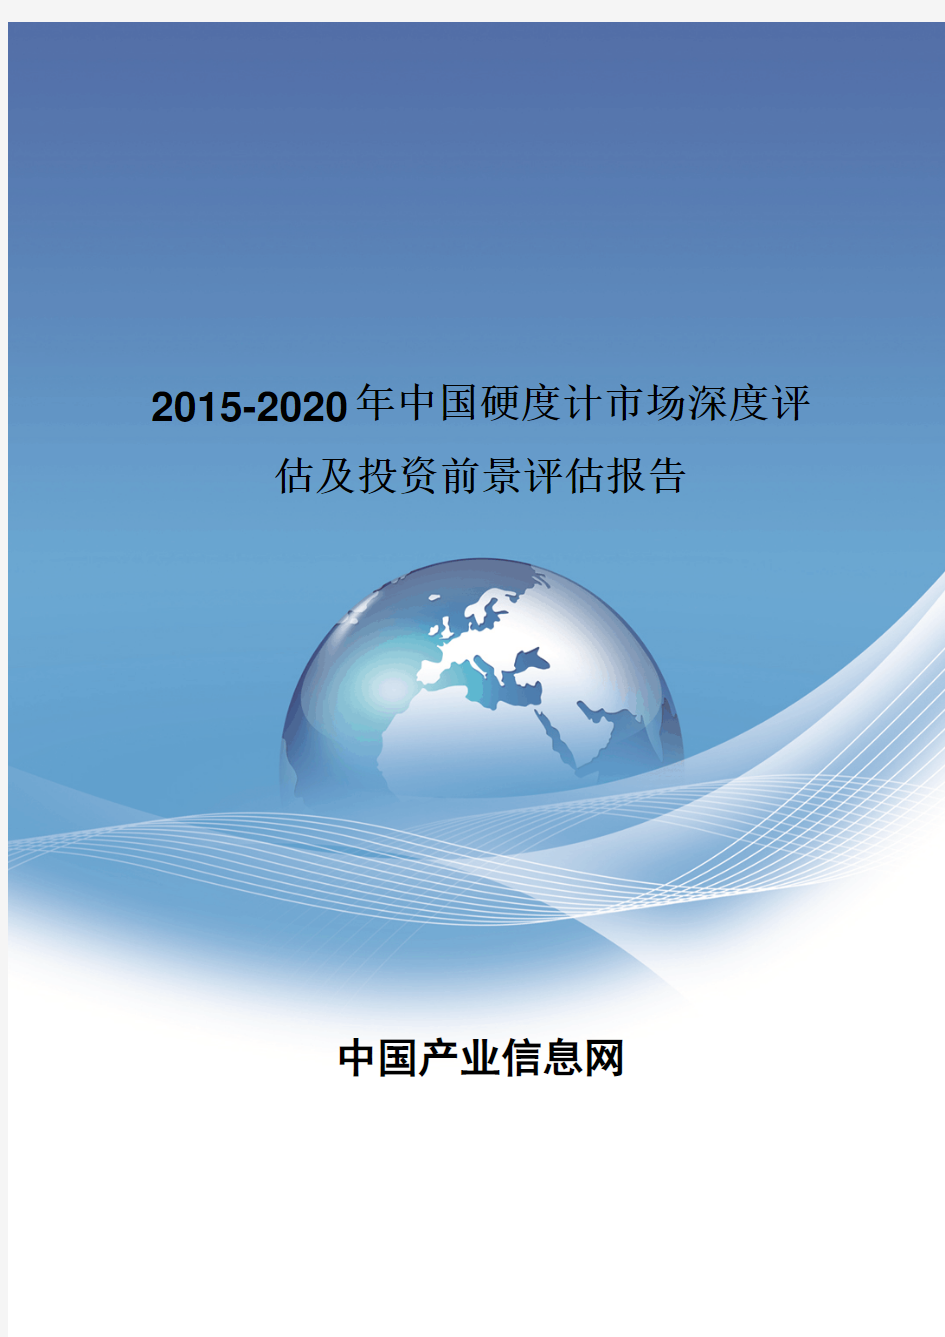 2015-2020年中国硬度计市场深度评估报告